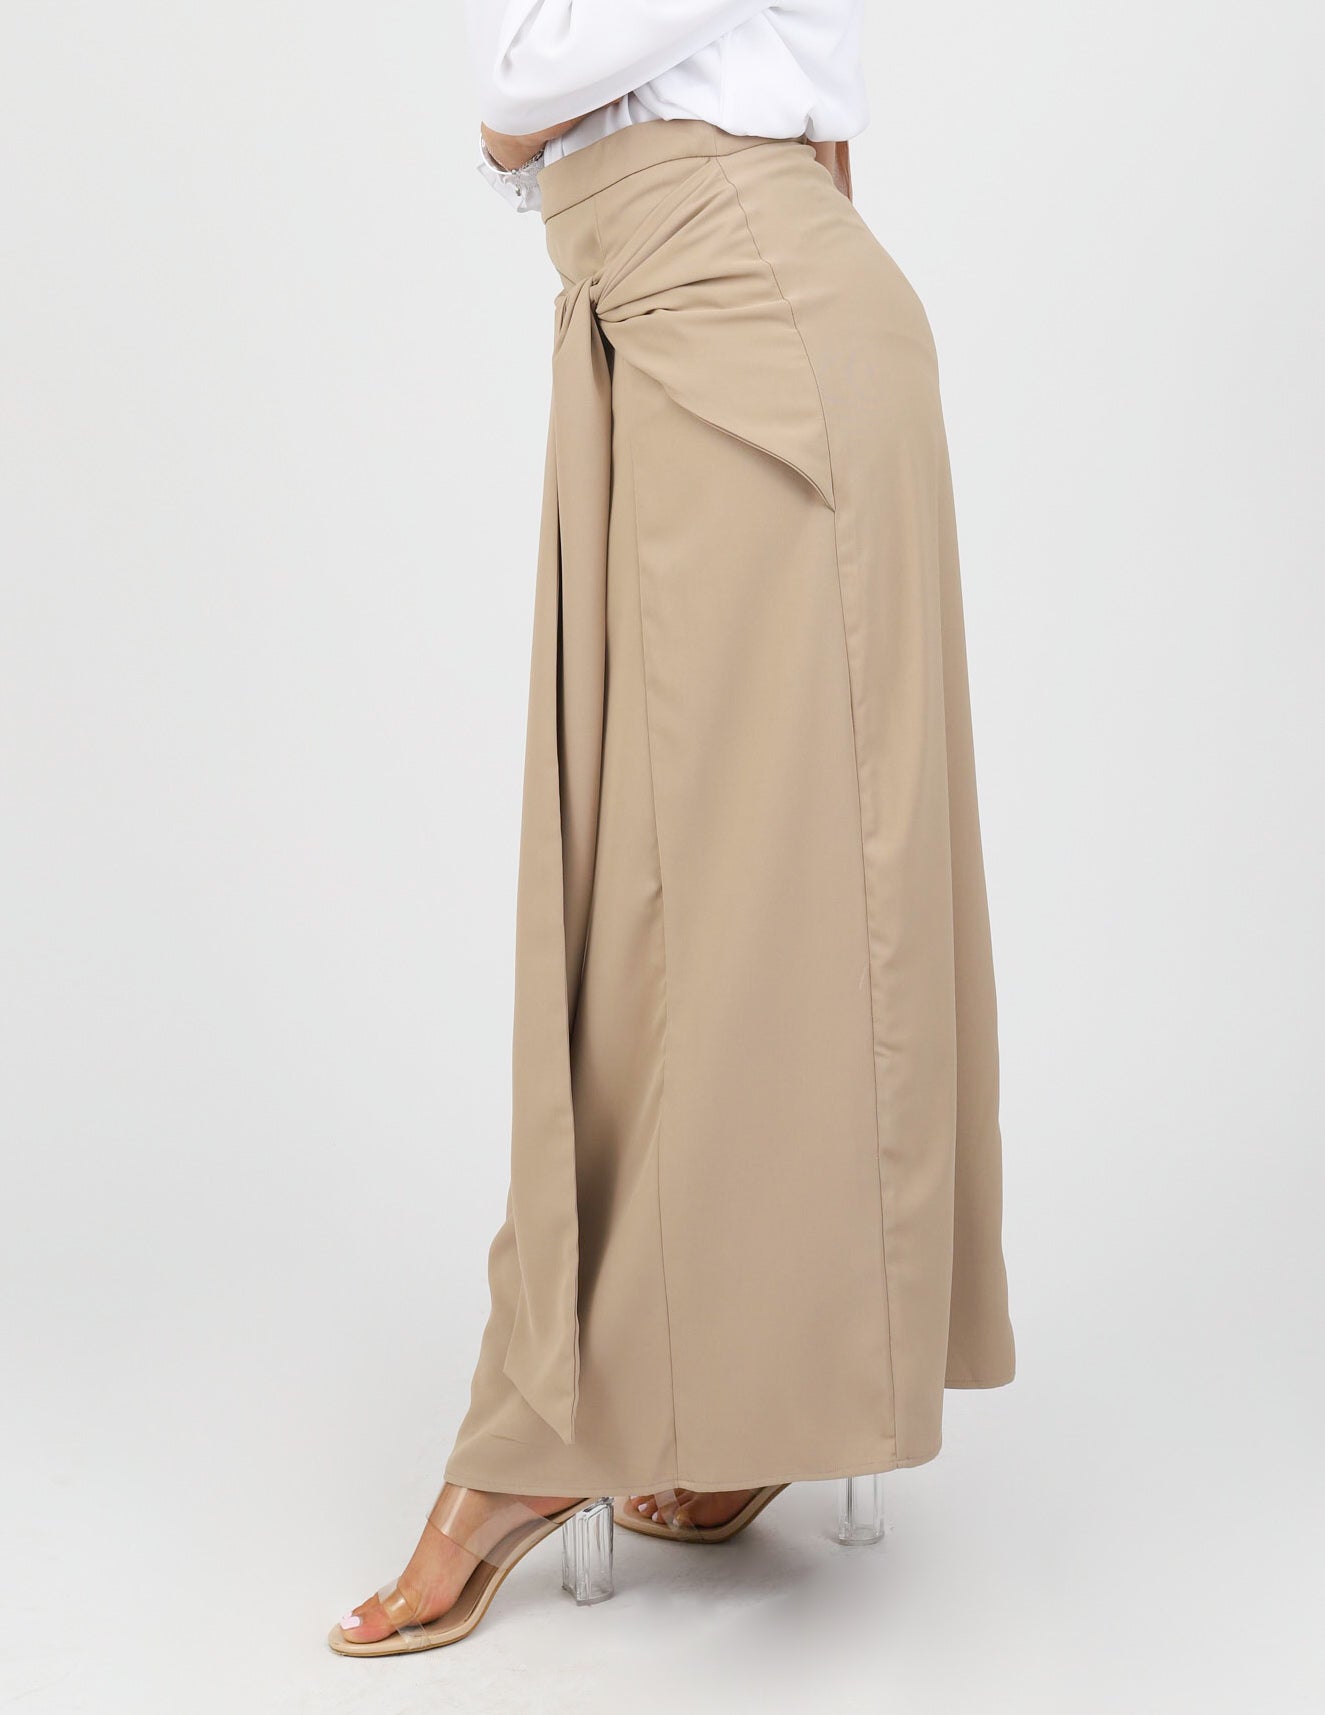 Eliyah Drape Skirt